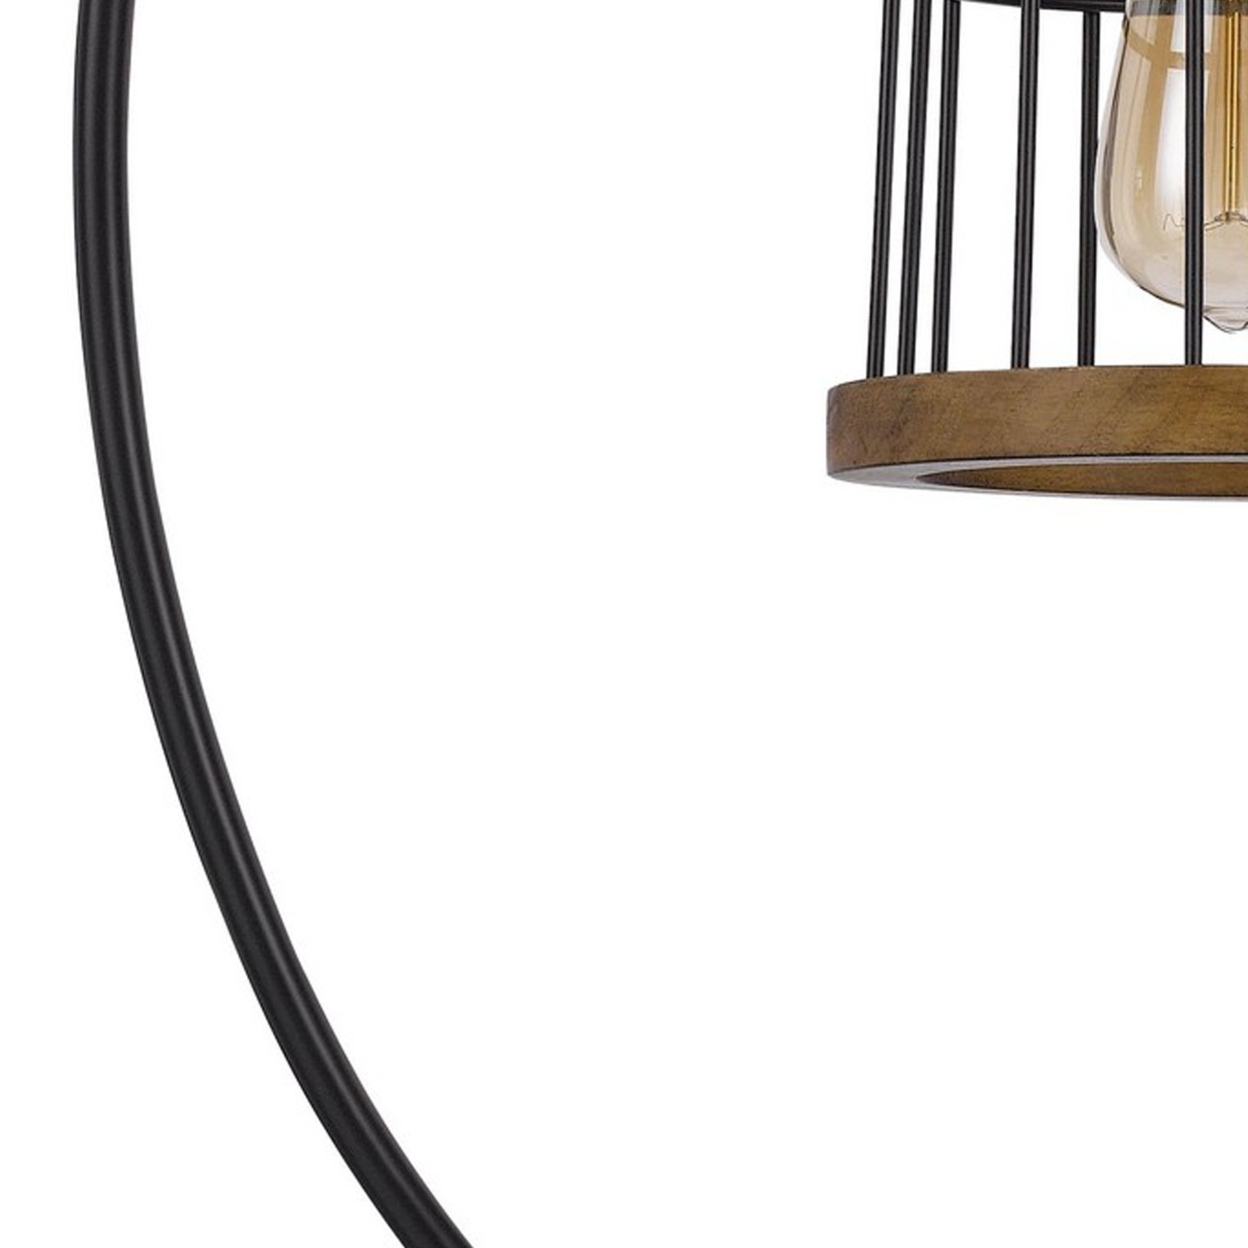 Kim 31 Inch Modern Table Lamp, Hanging Lantern Shade, Metal, Dark Bronze- Saltoro Sherpi